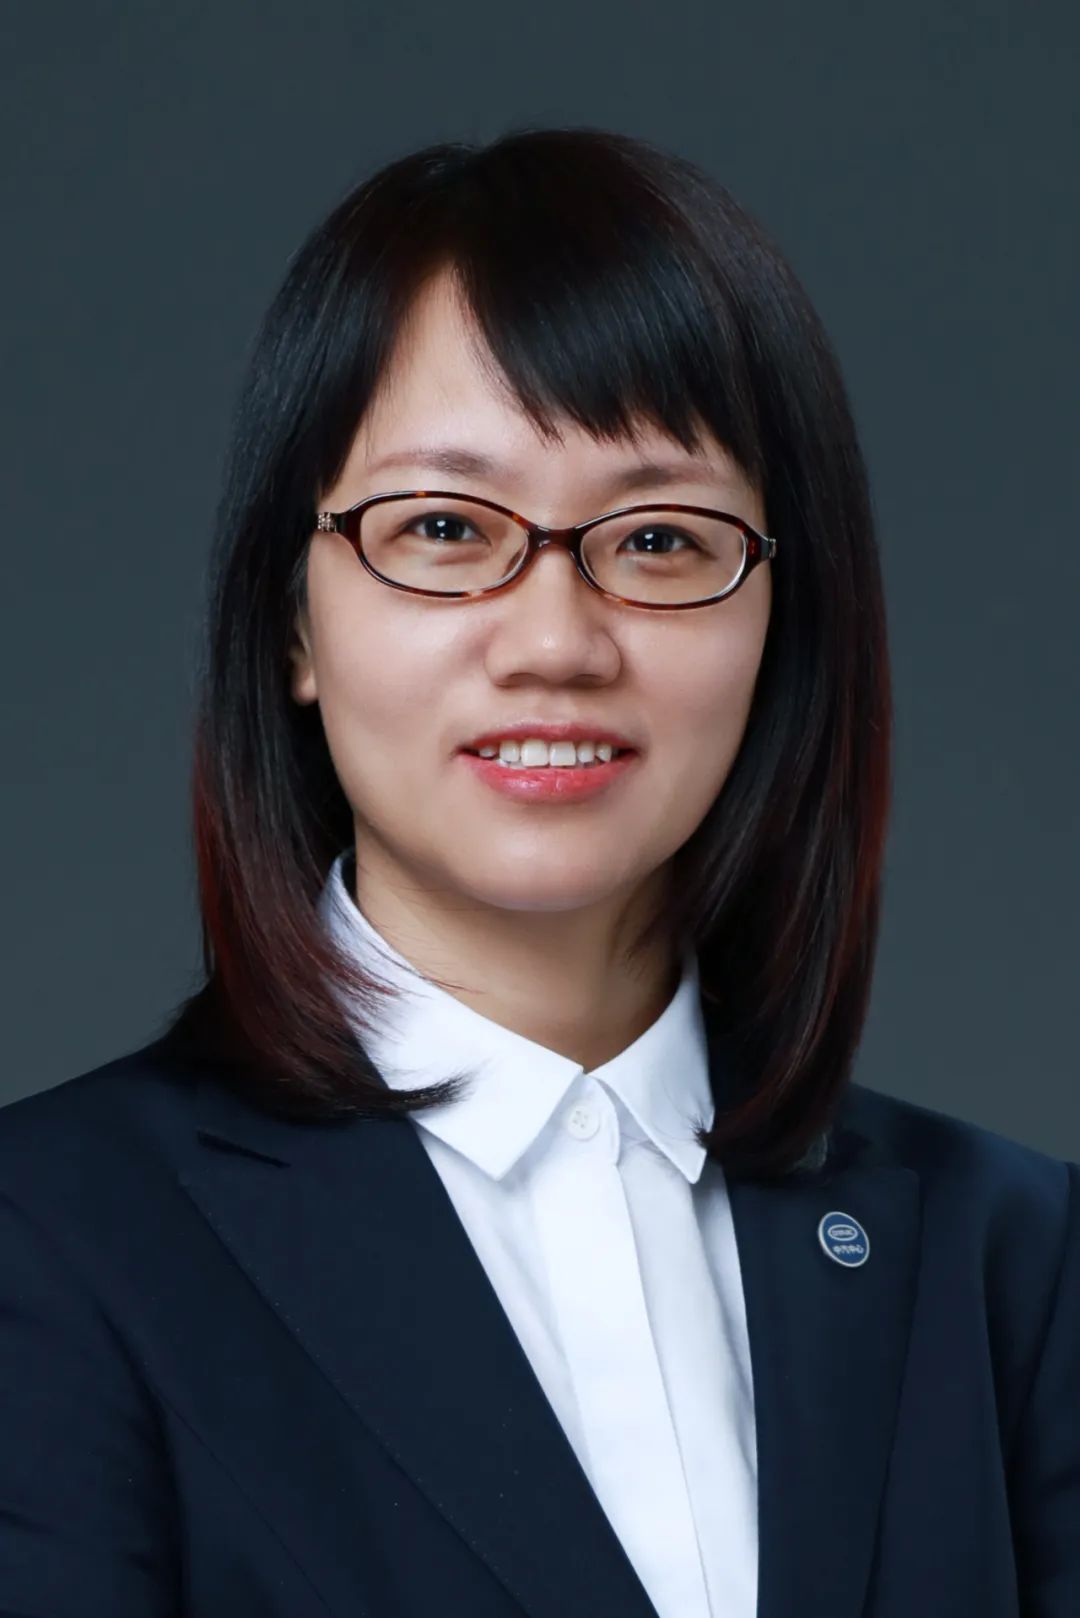 中国汽车技术研究中心有限公司首席科学家王芳